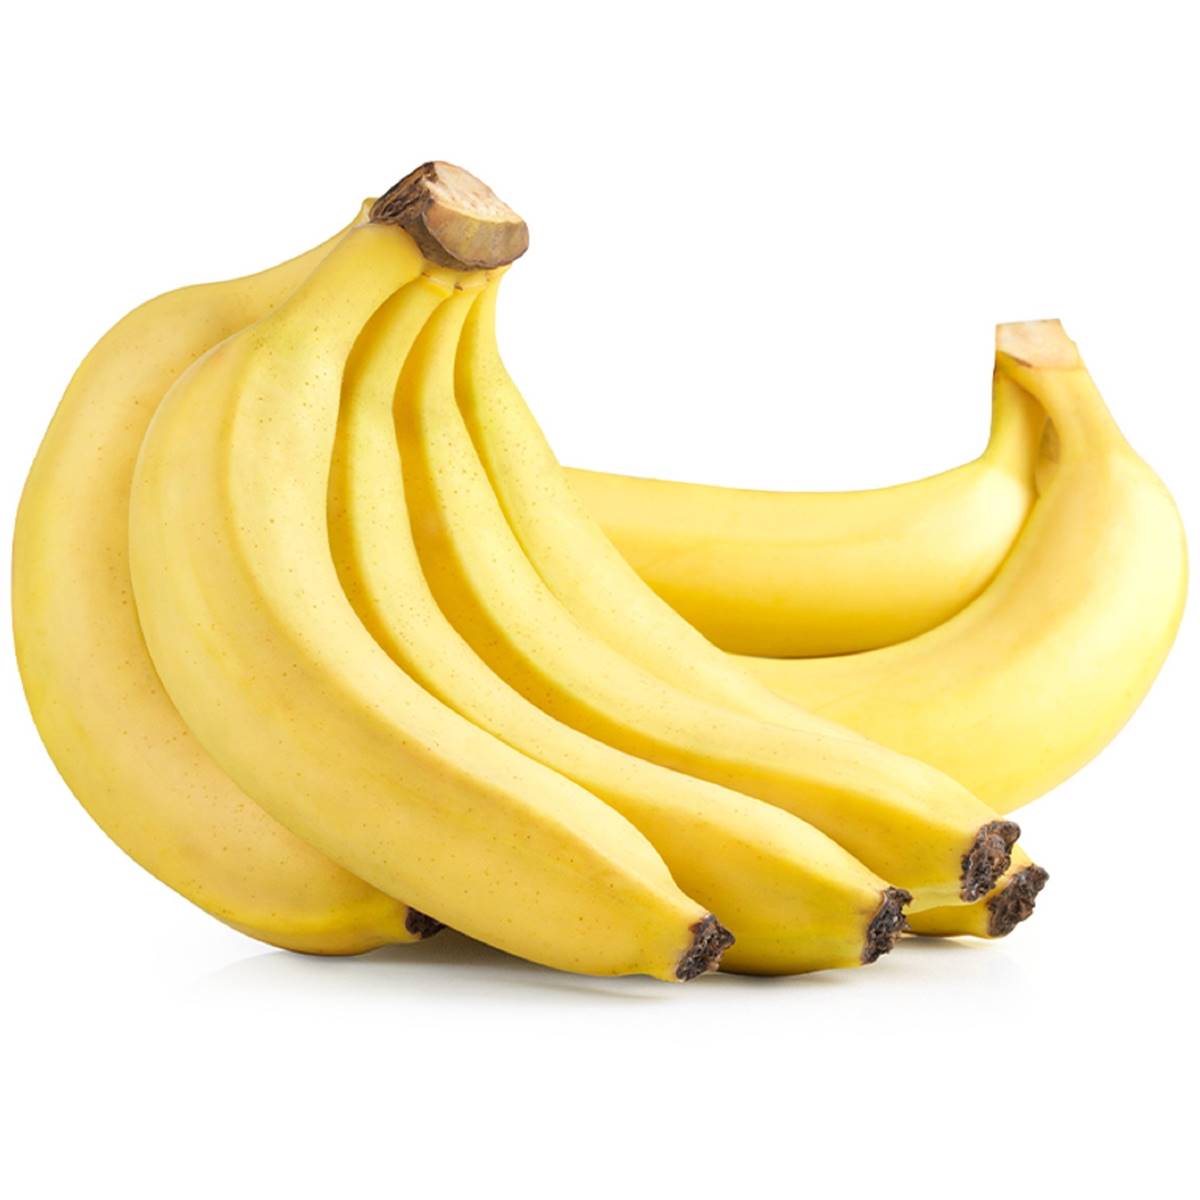 Calories in Cavendish Bananas